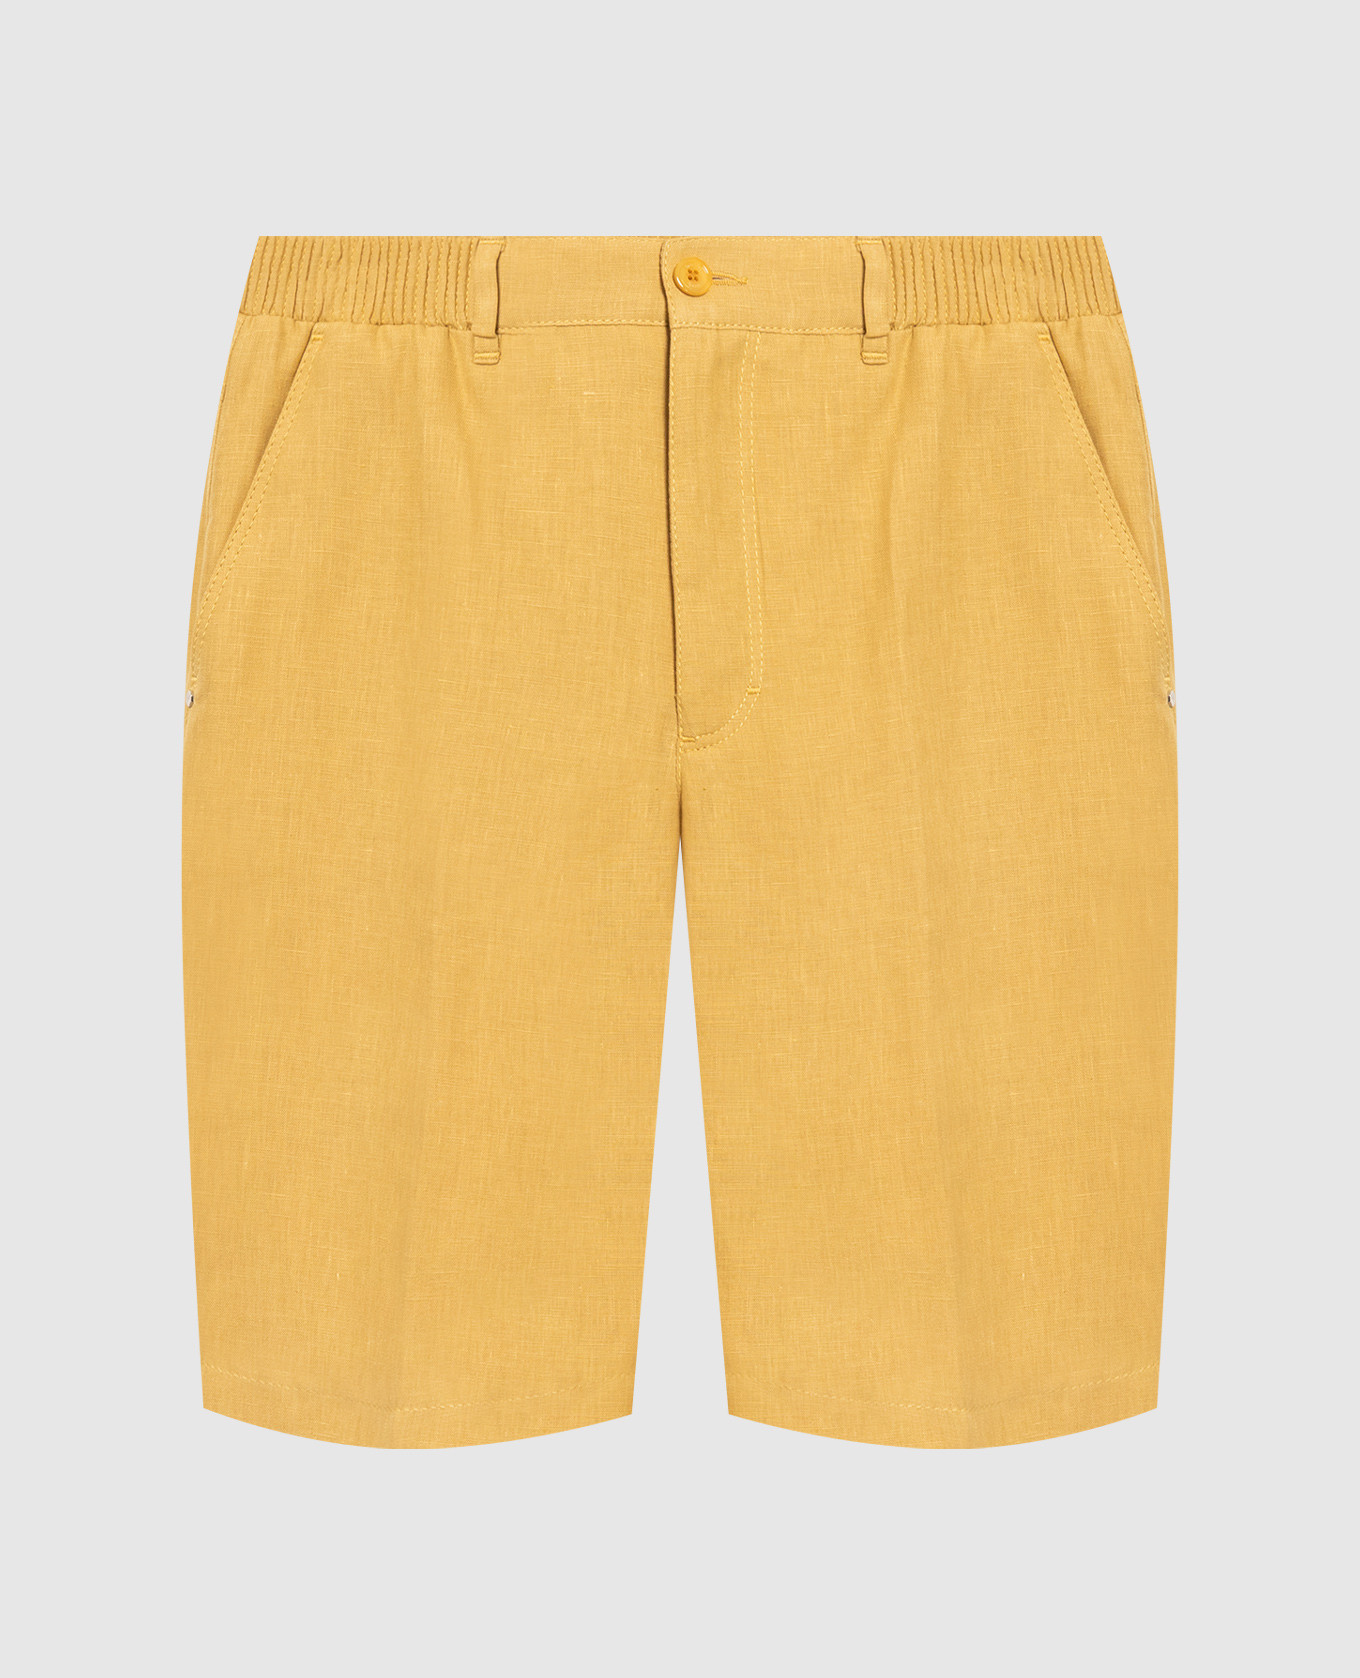 Желтые шорты с вышивкой логотипа из льна.